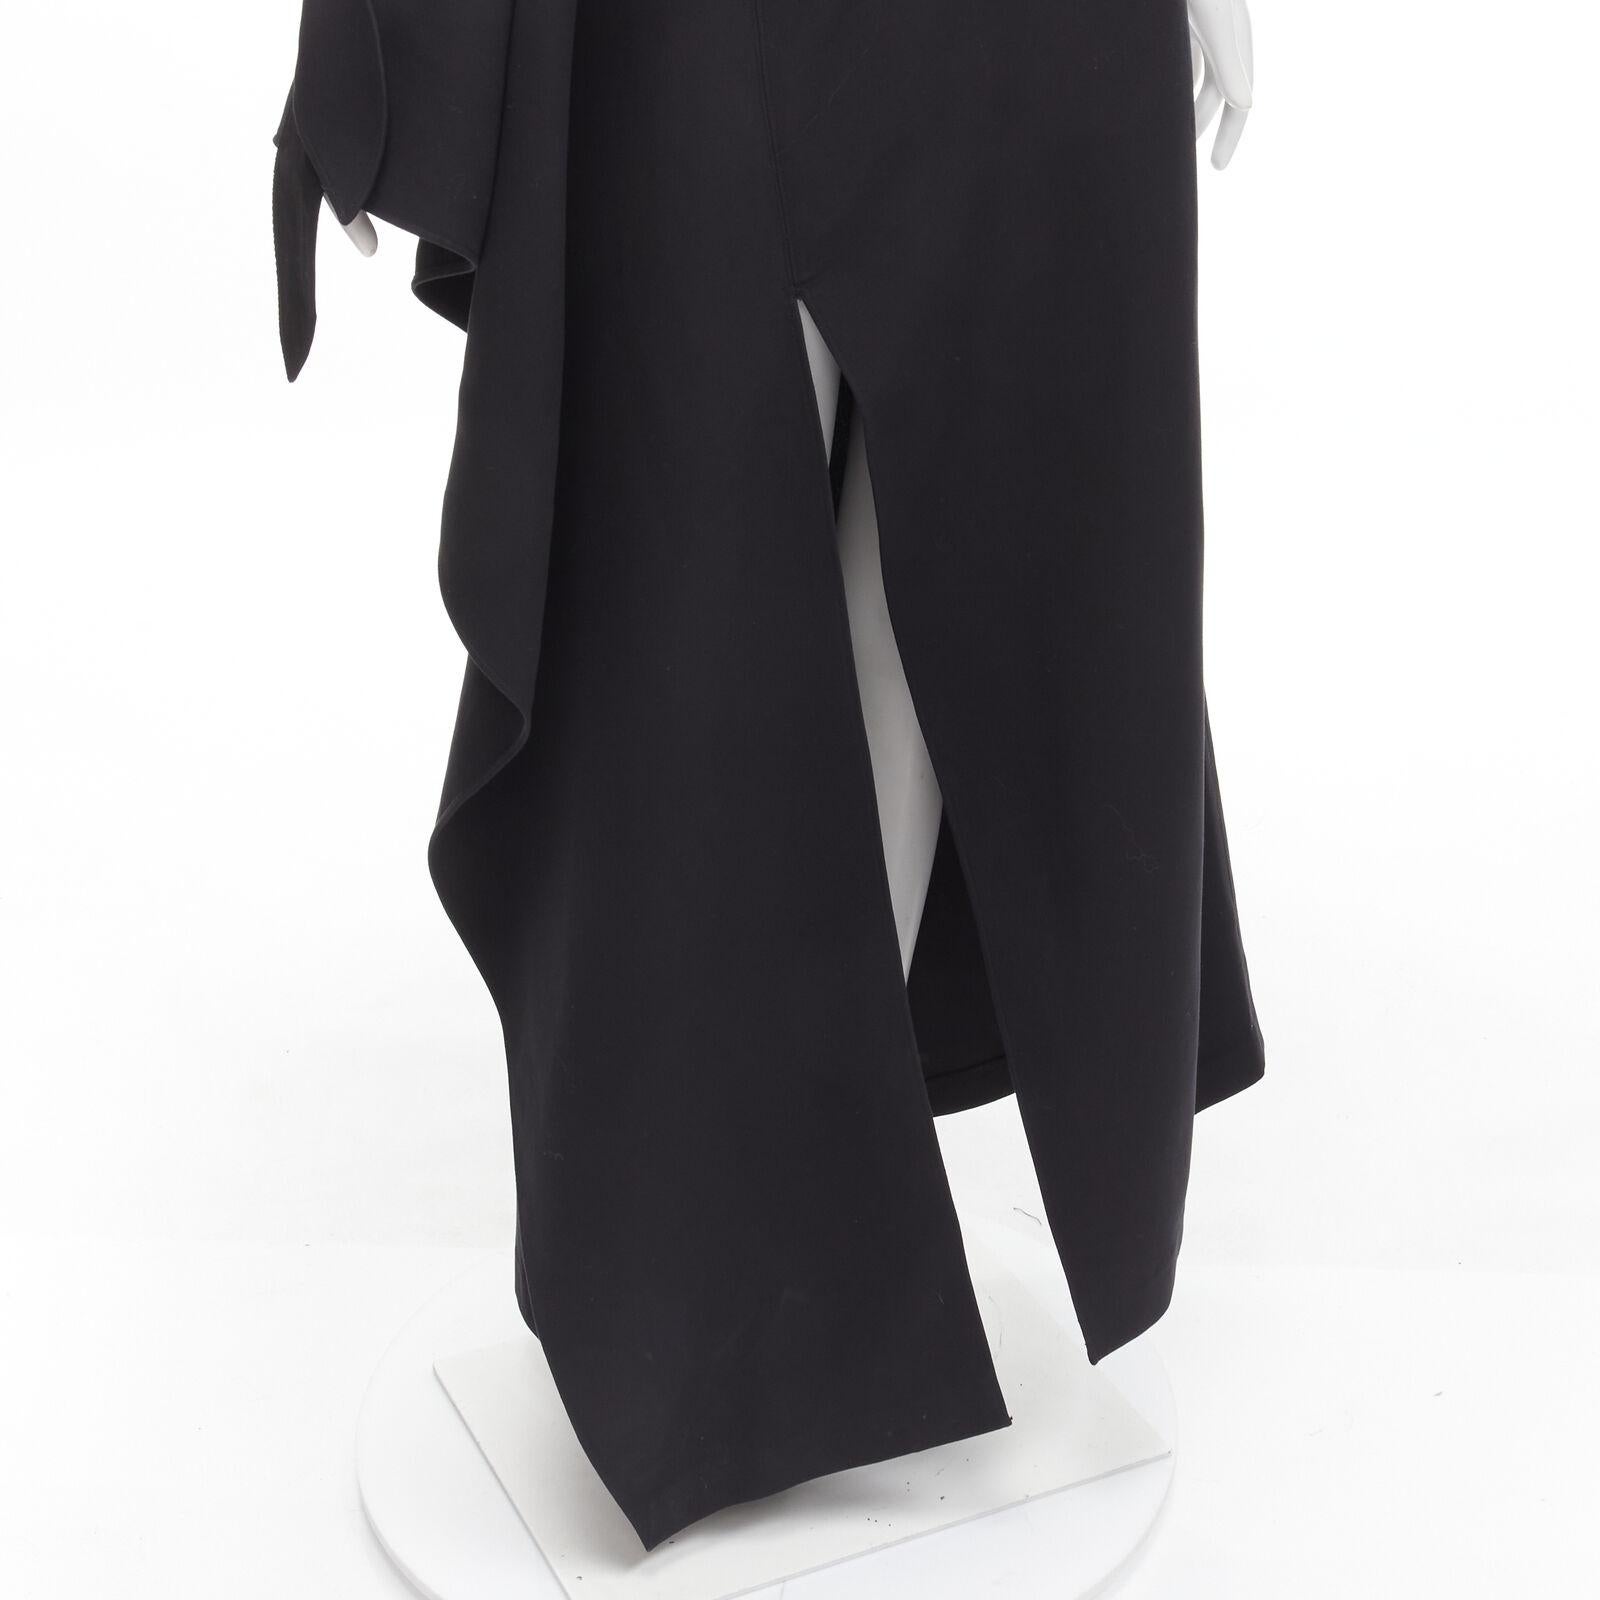 ROSIE ASSOULIN 2015 Runway black cold shoulder high slit halter gown dress US2 S For Sale 5